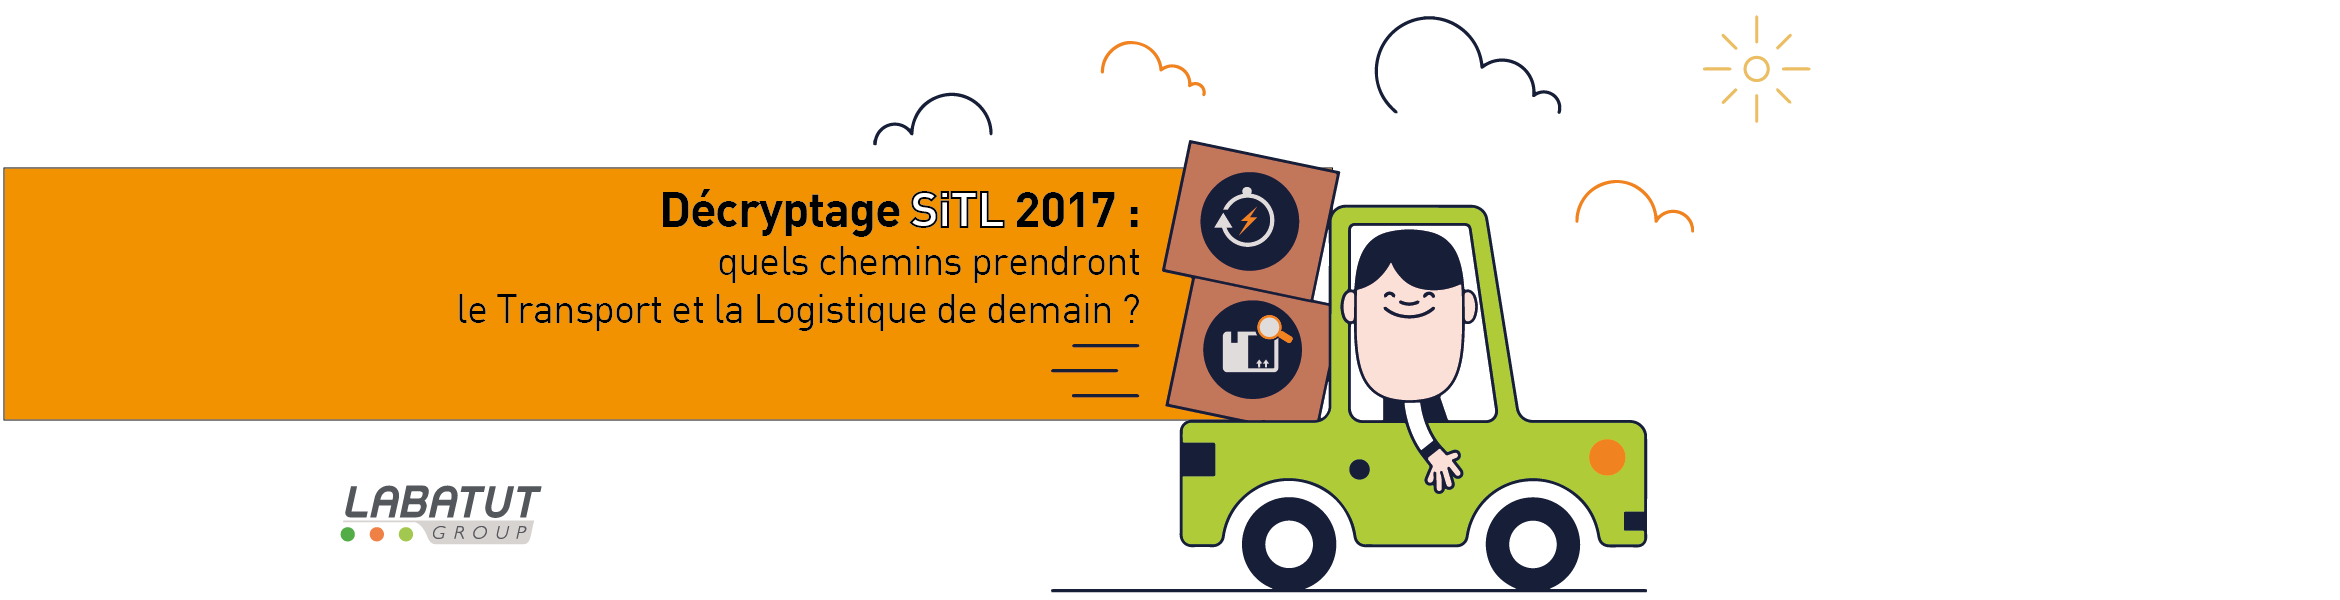 Décryptage SITL 2017 : quels chemins prendront le Transport et le Logistique de demain?